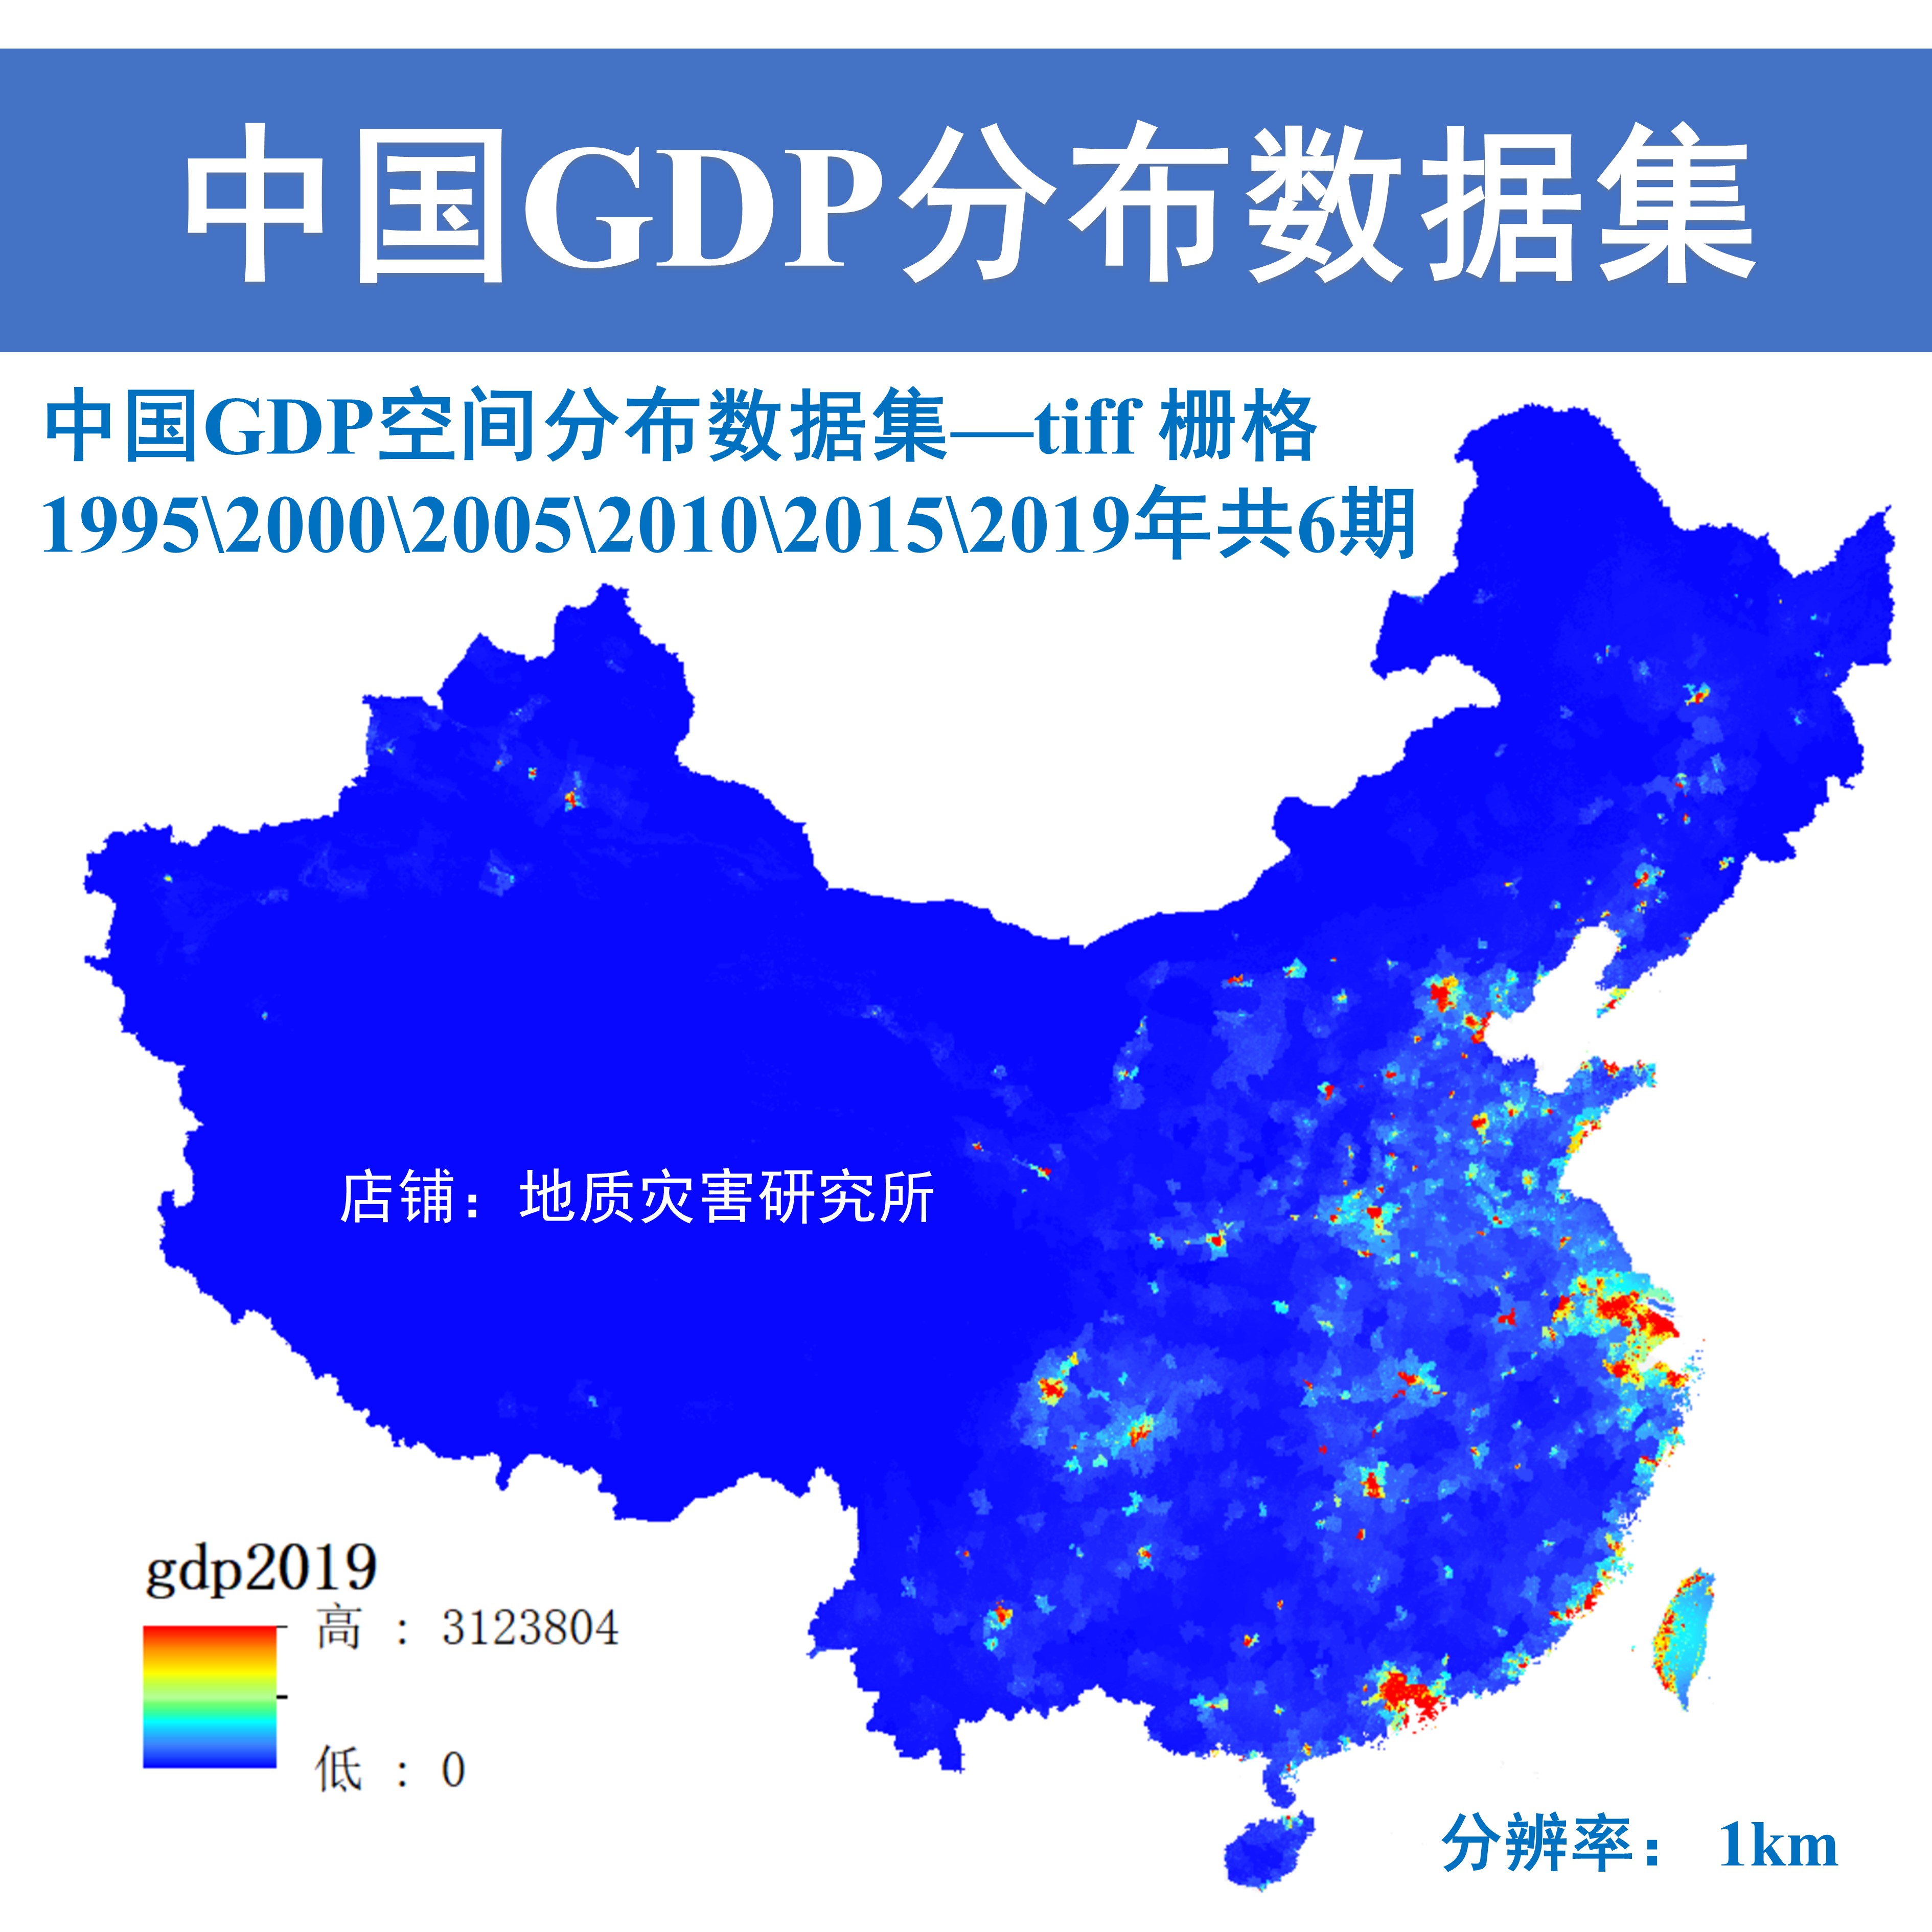 中国多时期GDP空间分布数据集Arcgis栅格数据1KM分辨率